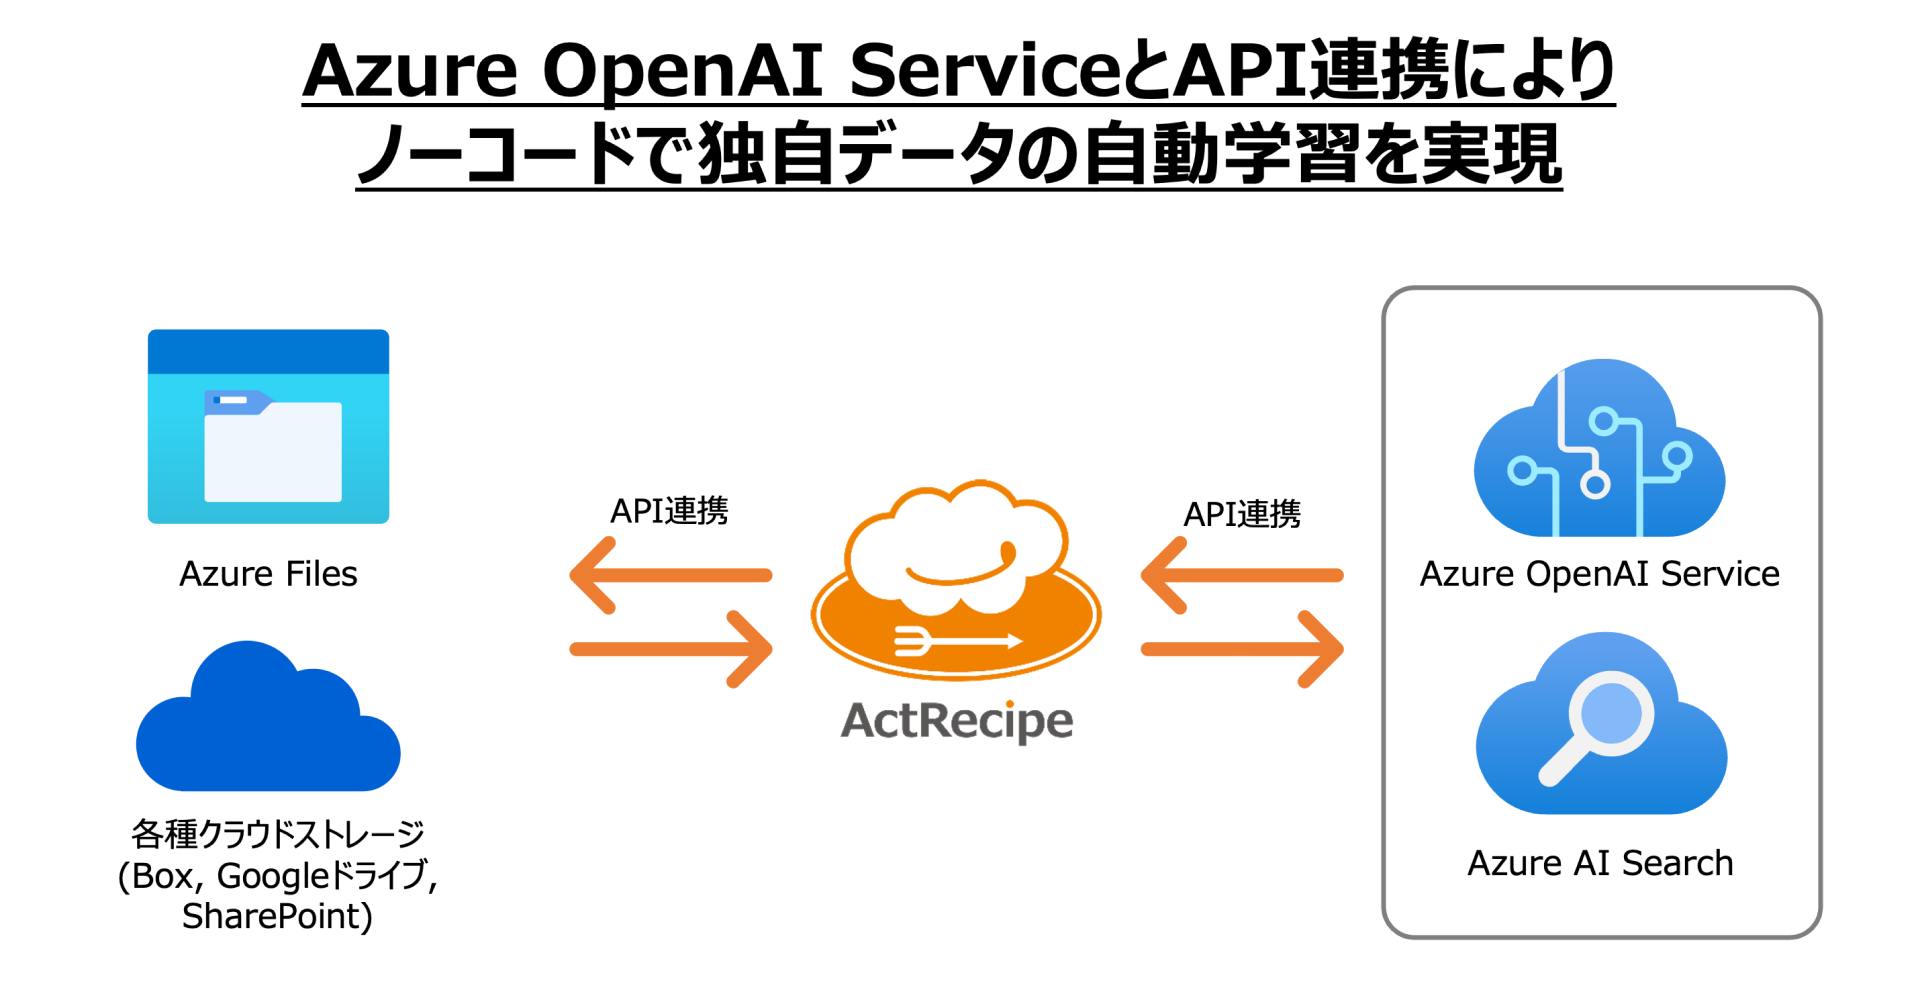 Azure OpenAI Service̓Ǝf[^wKIiPaaSuActRecipev@\񋟂Jn